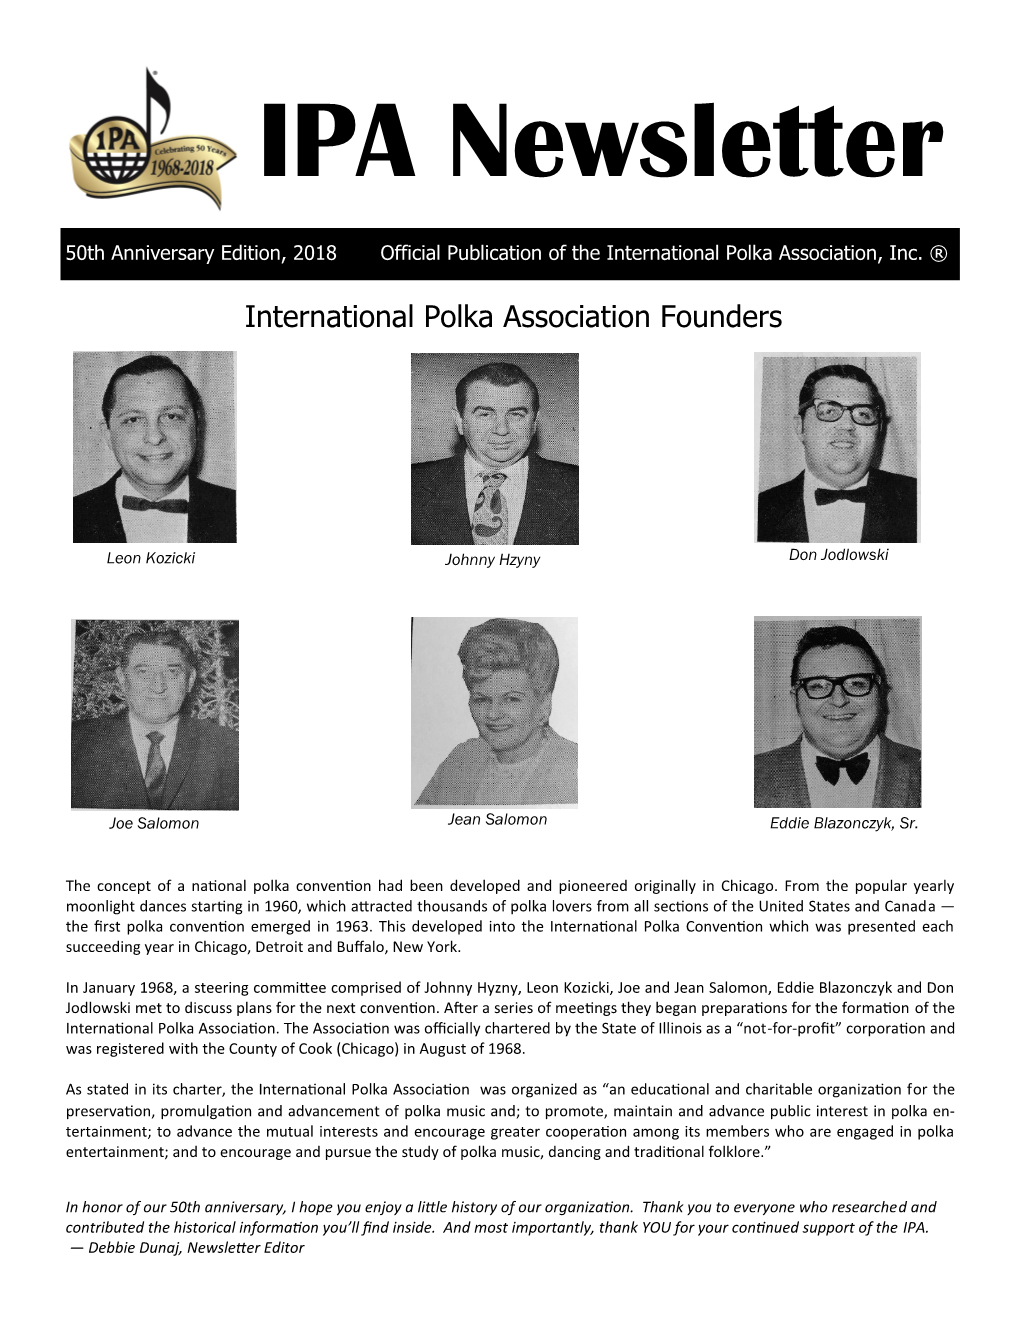 IPA Newsletter * 50Th Anniversary